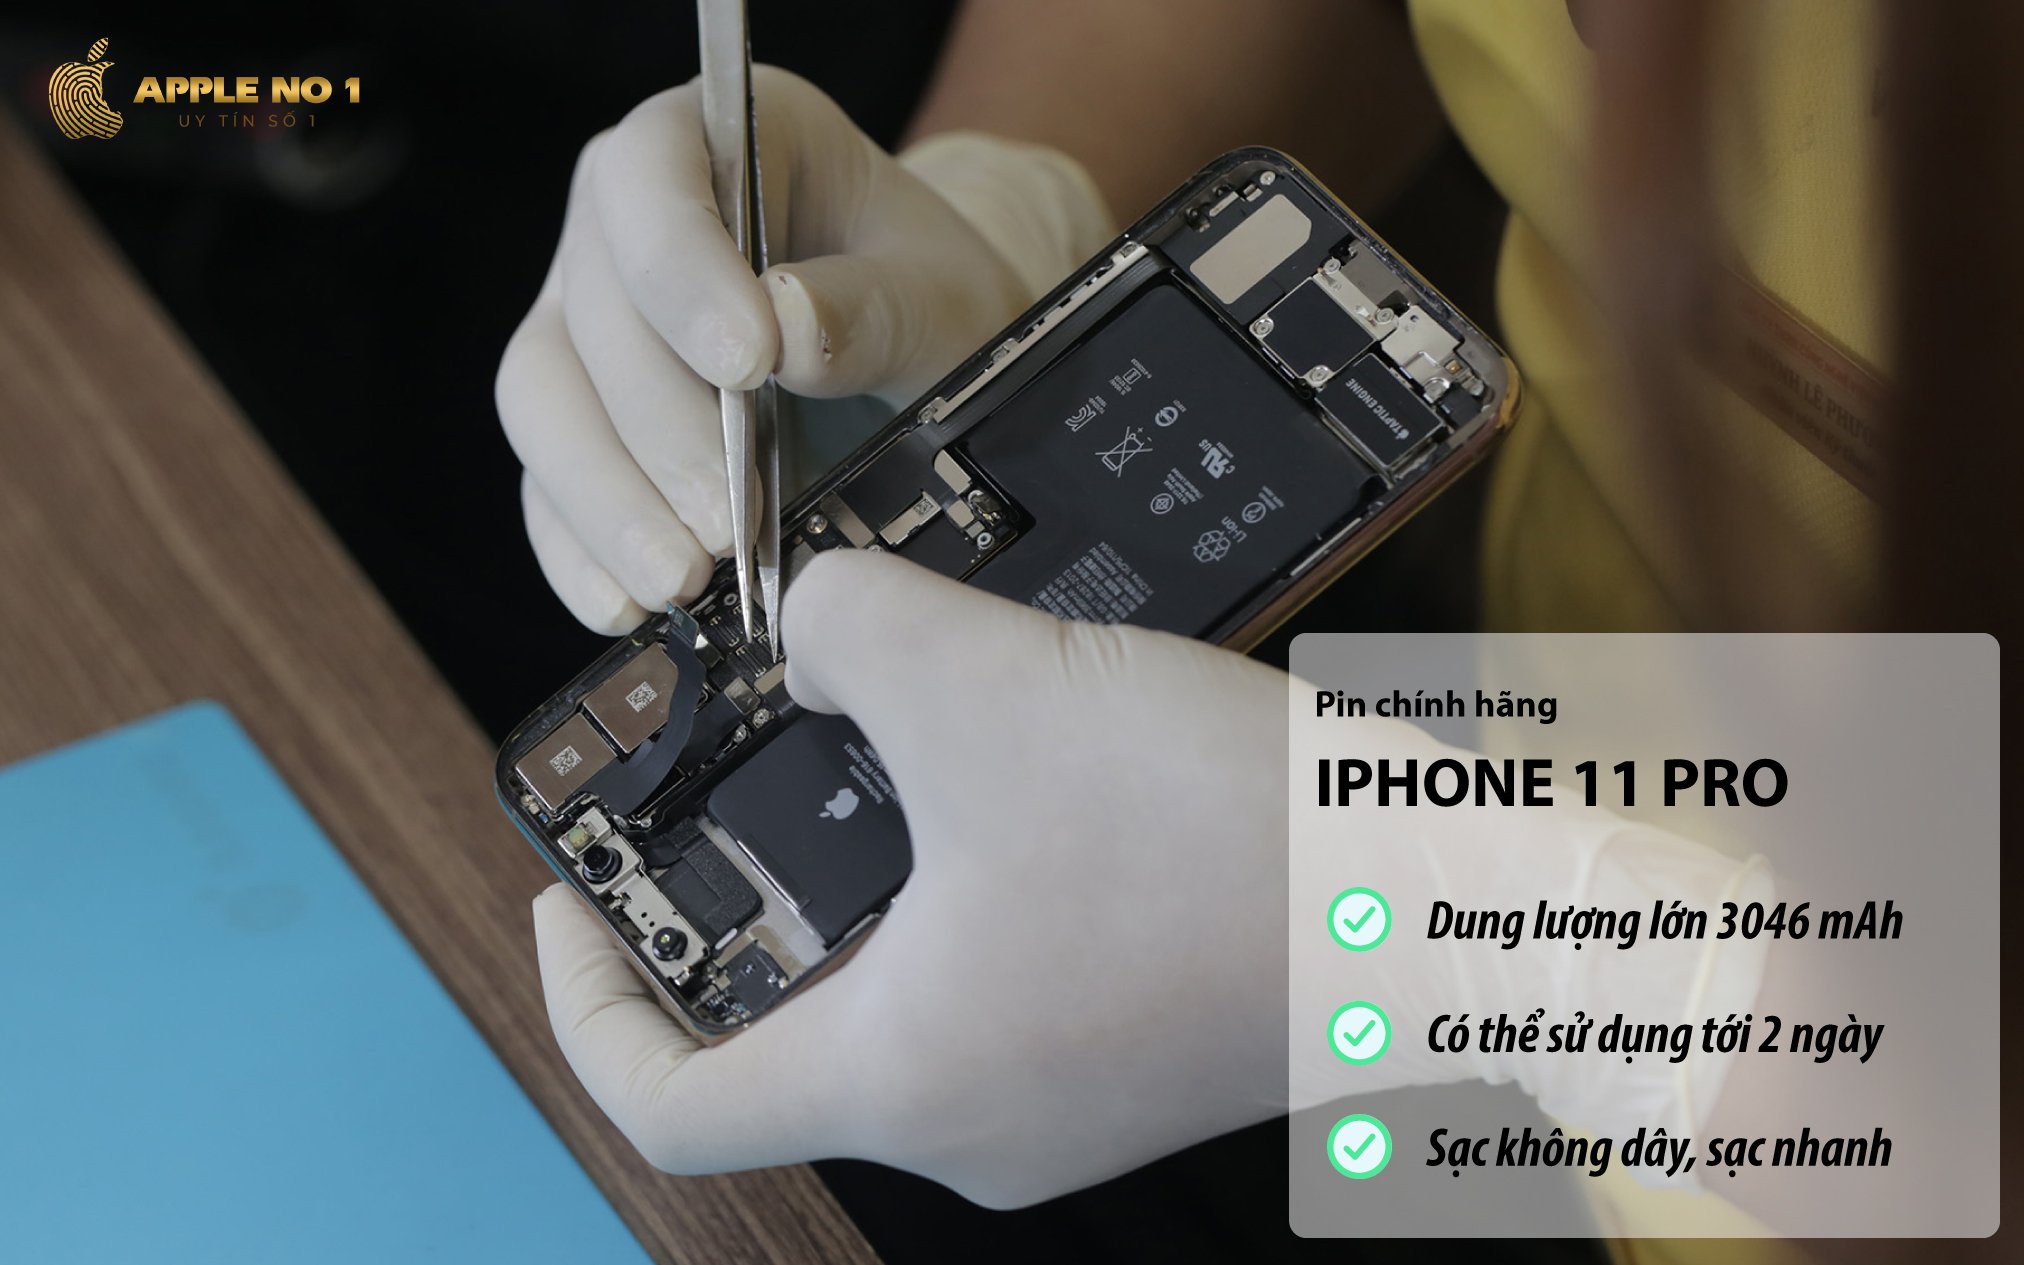 iPhone 11 Pro dung luong pin 3046 mAh